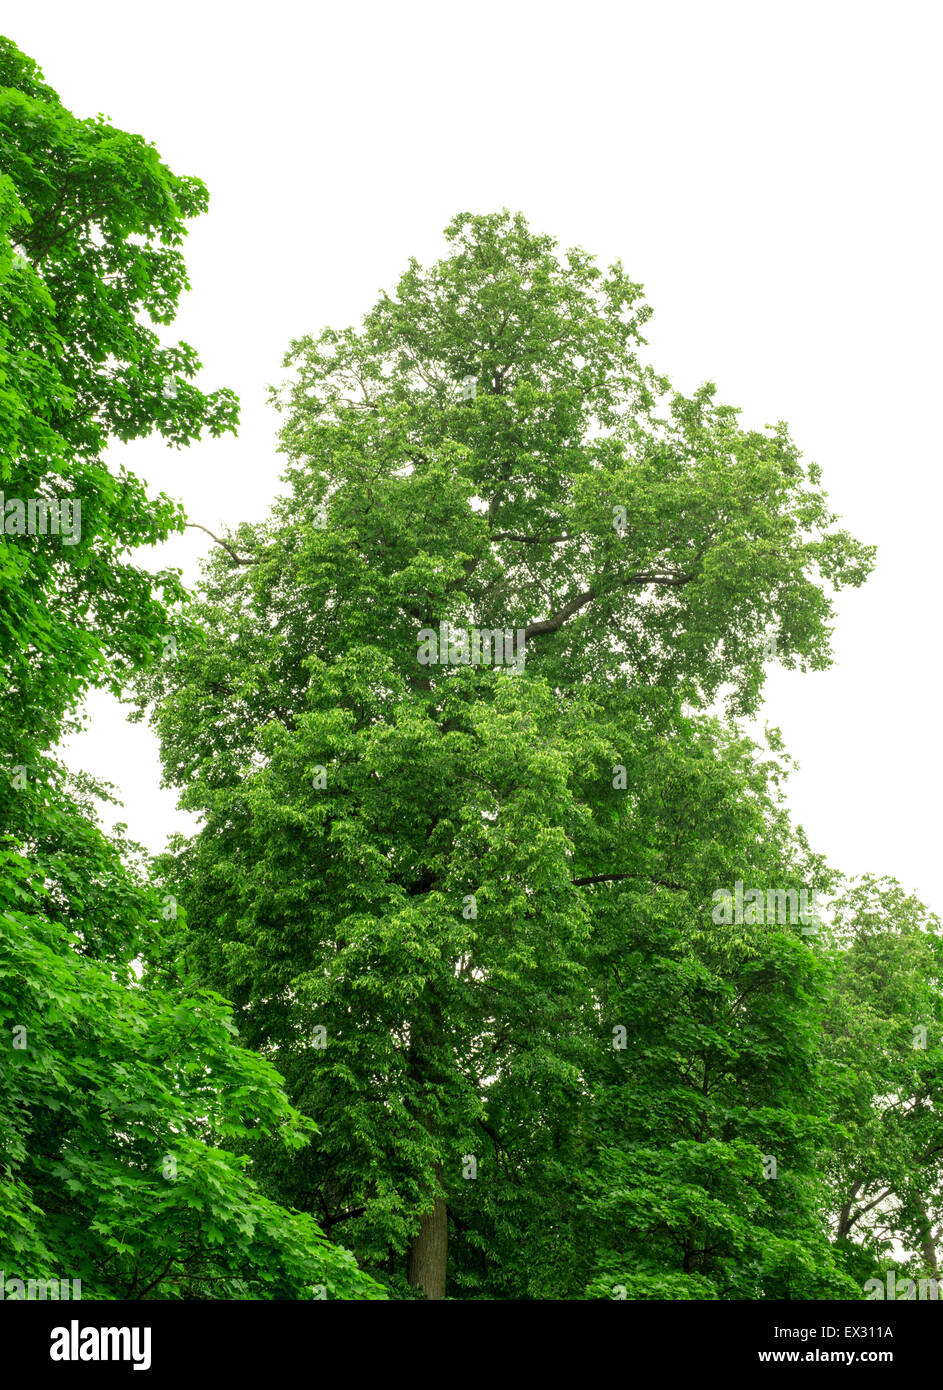 Green trees Stock Photo